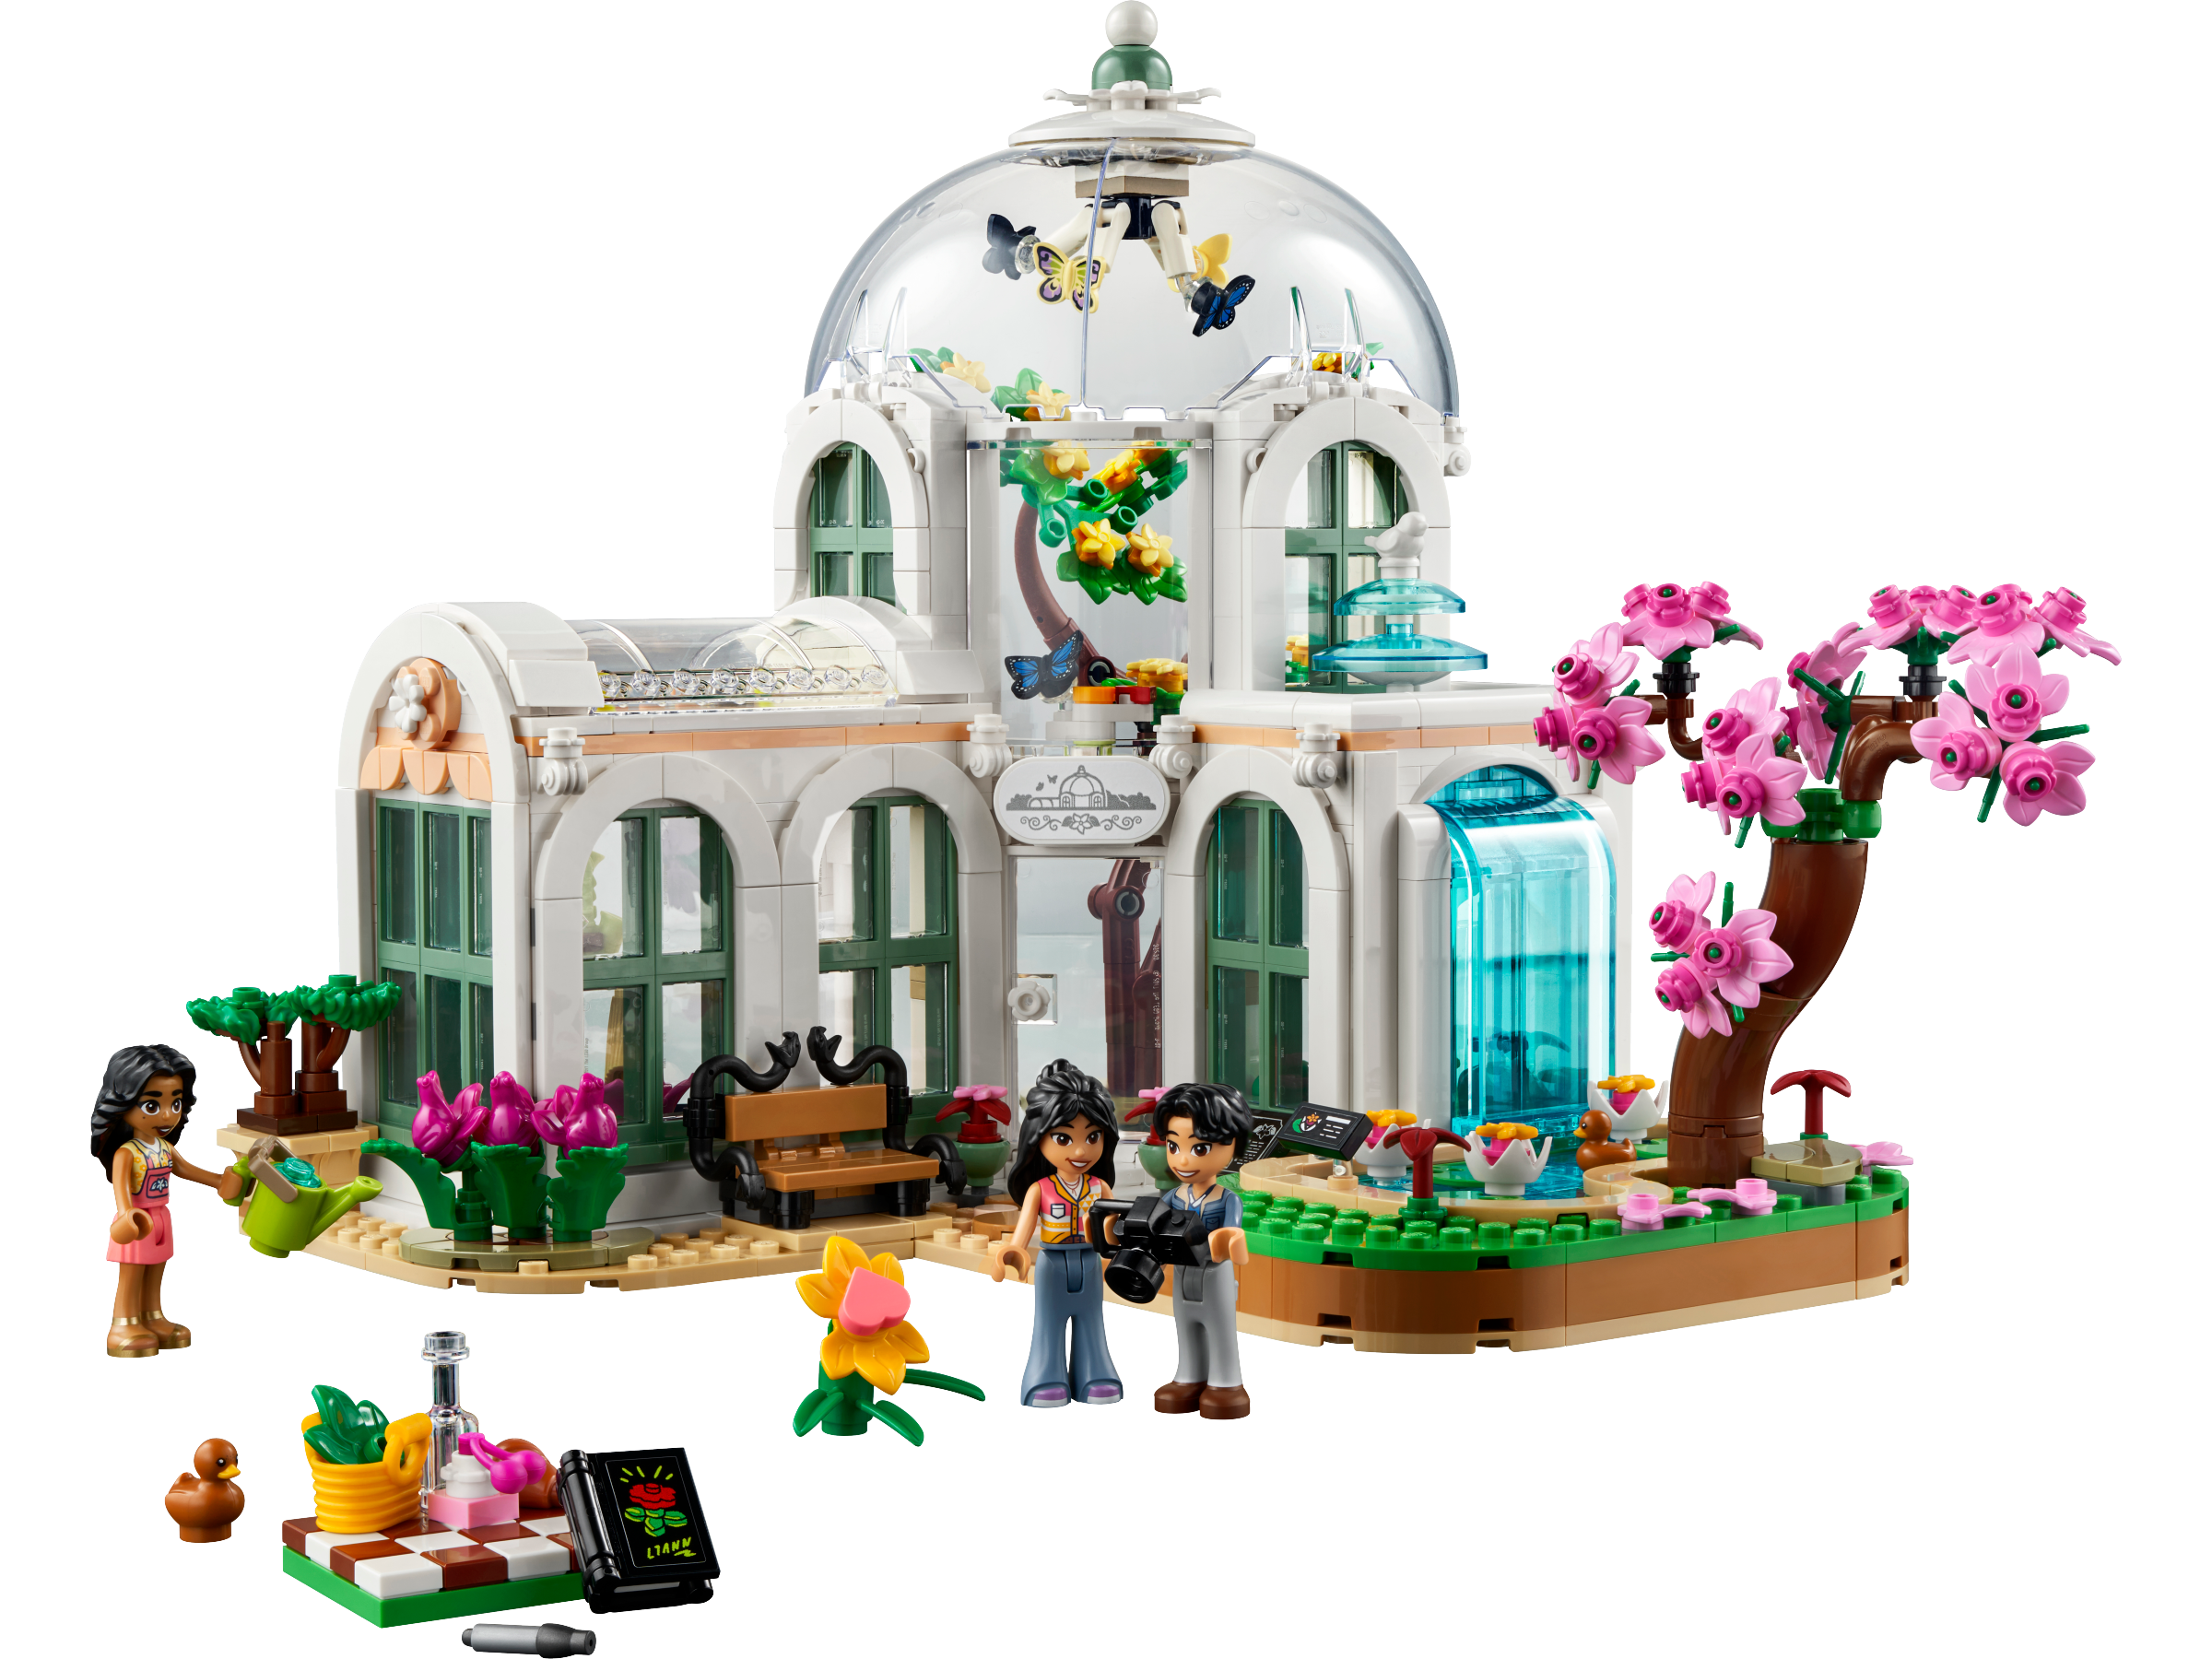 LEGO IDEAS - The Botanical Garden